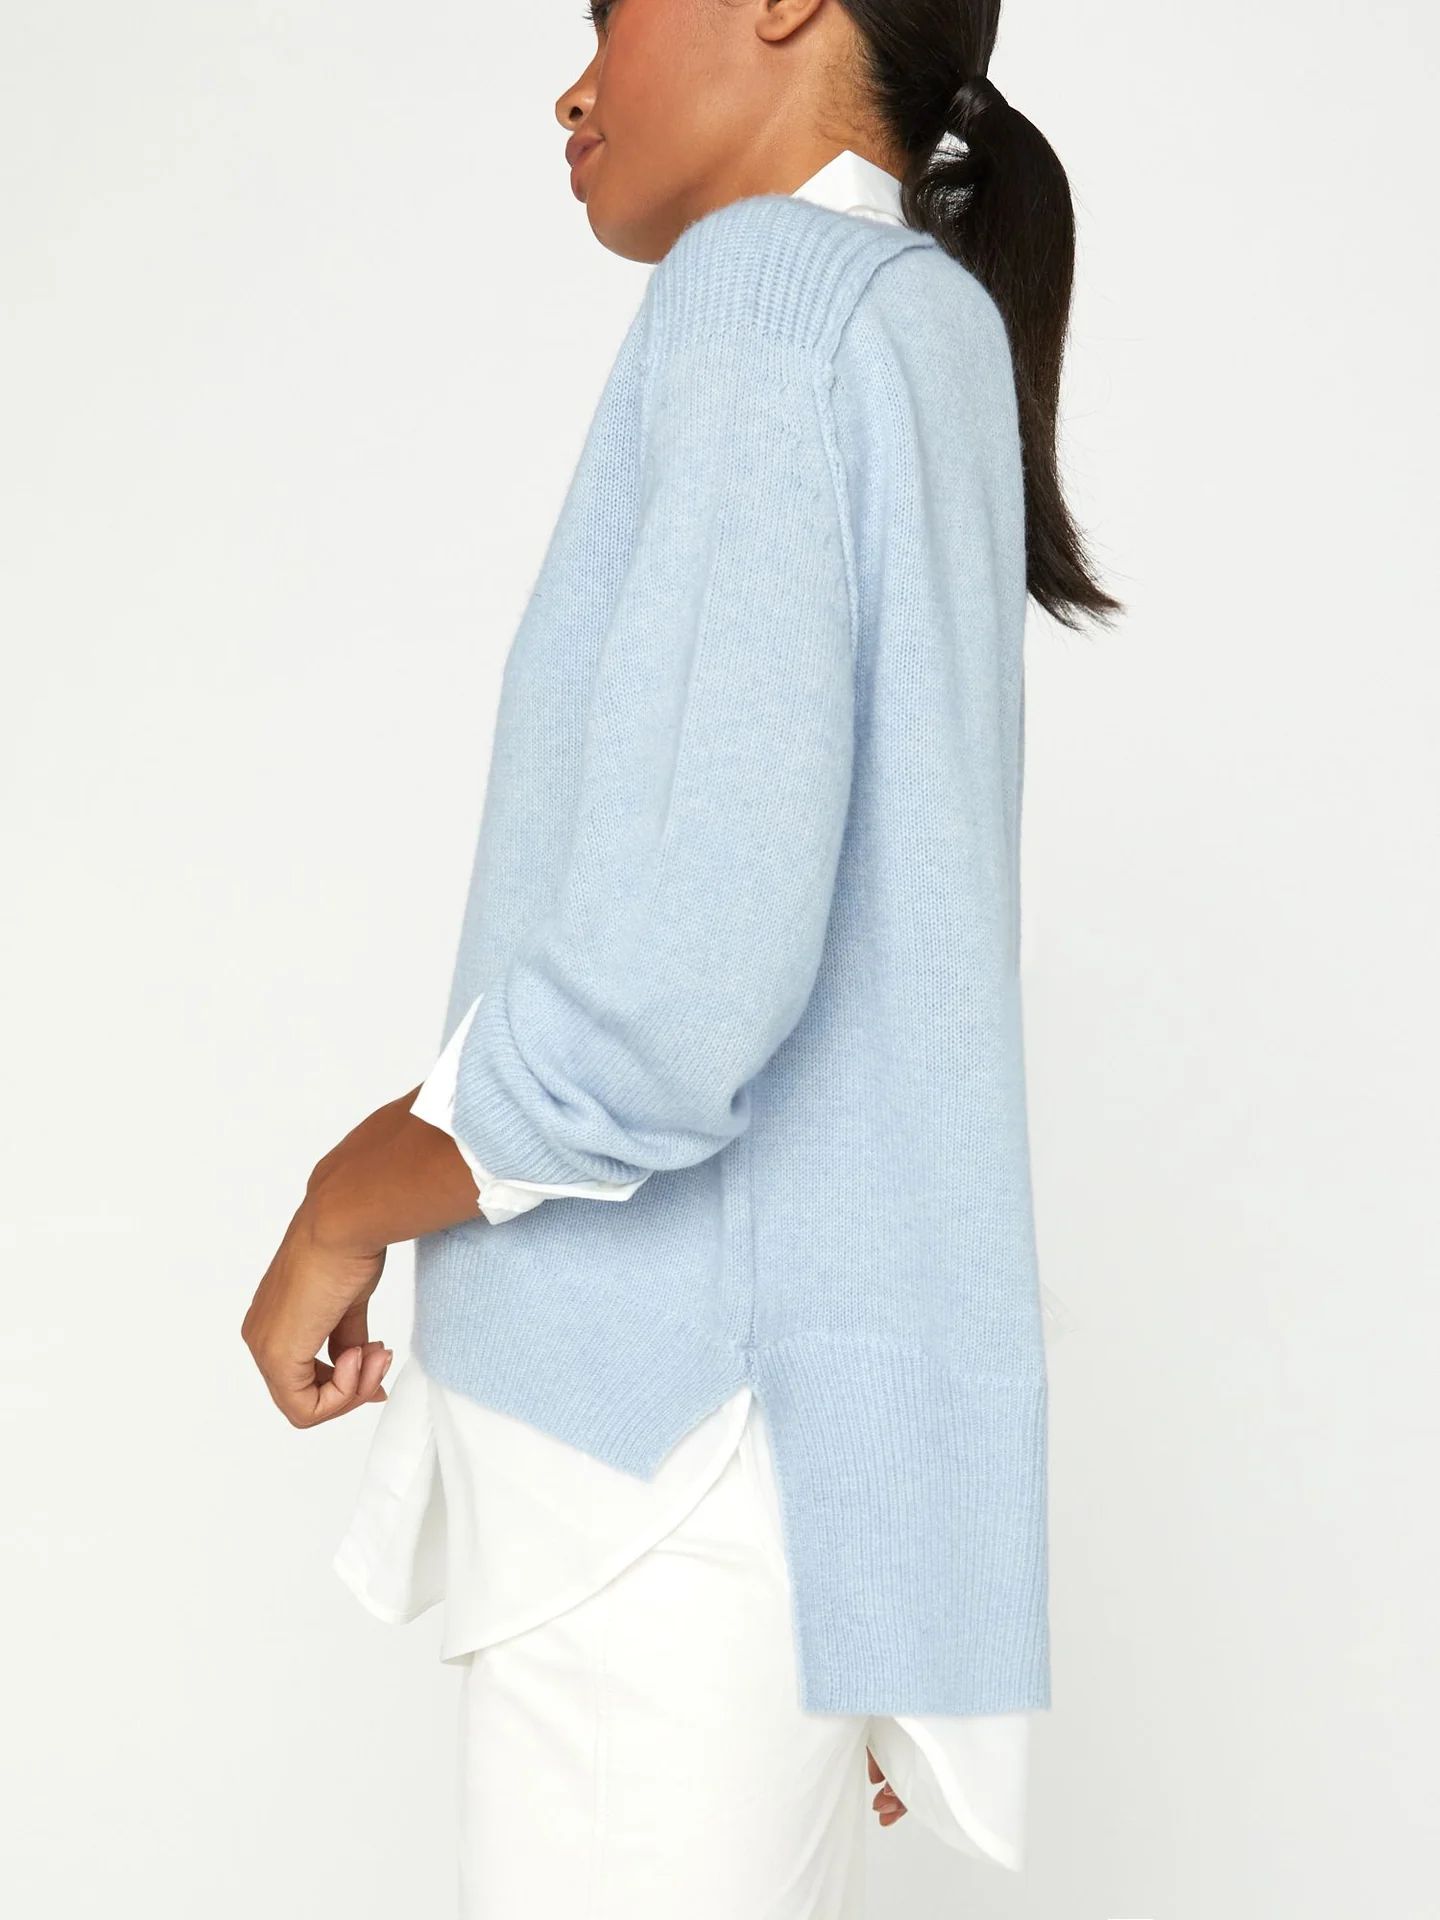 Brochu Walker | Women's V-neck Layered Pullover Sweater in Skye Blue | Brochu Walker